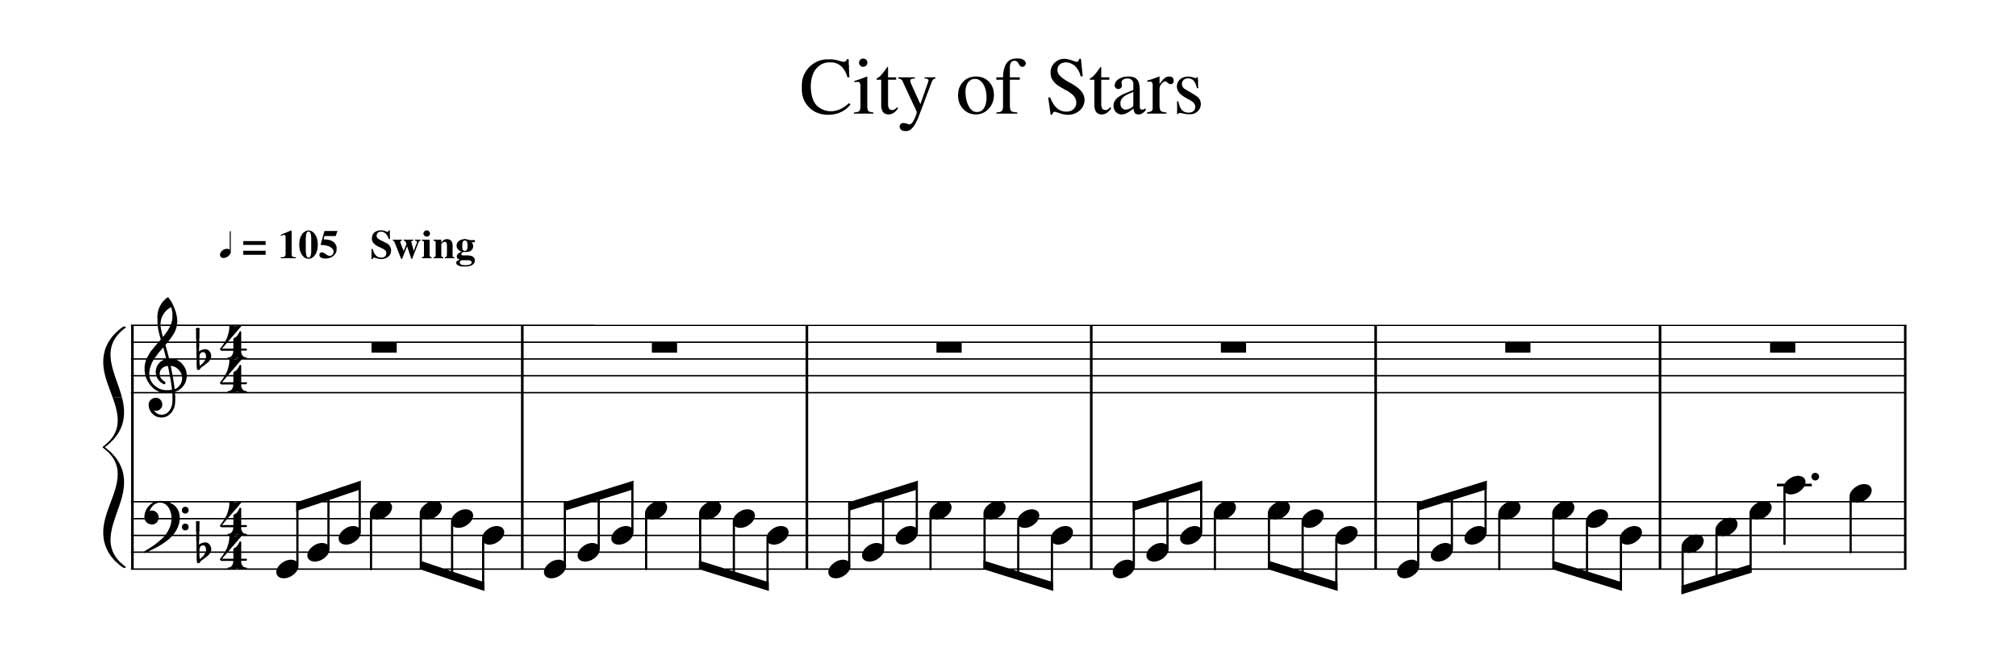 نت پیانوی شهر ستاره ها city of stars